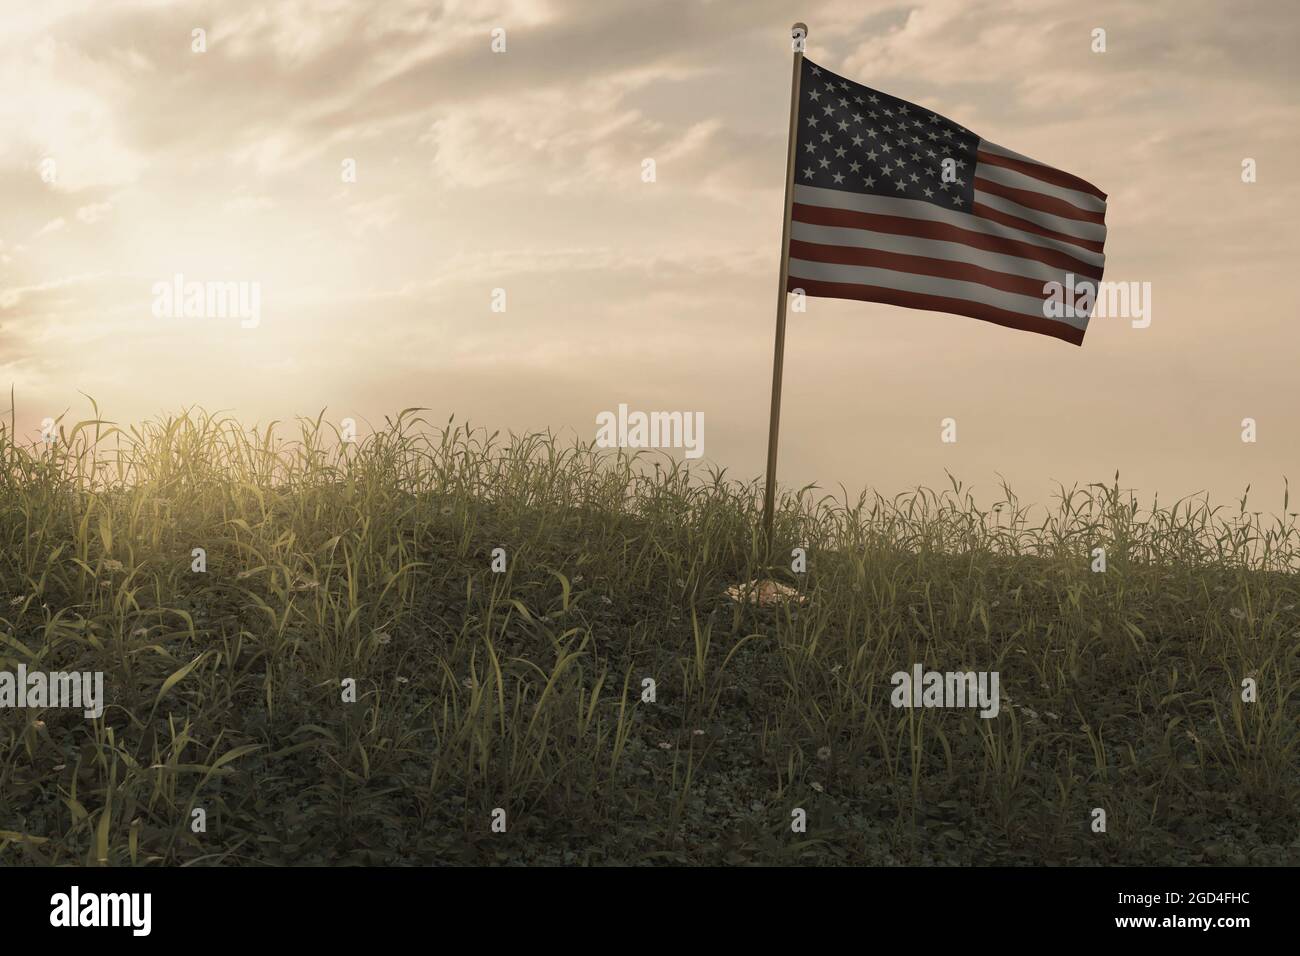 3d-Darstellung einer kleinen winkenden amerikanischen Flagge, die auf einer friedlichen Blumenwiese steht, um an den Nationalfeiertag zu erinnern Stockfoto